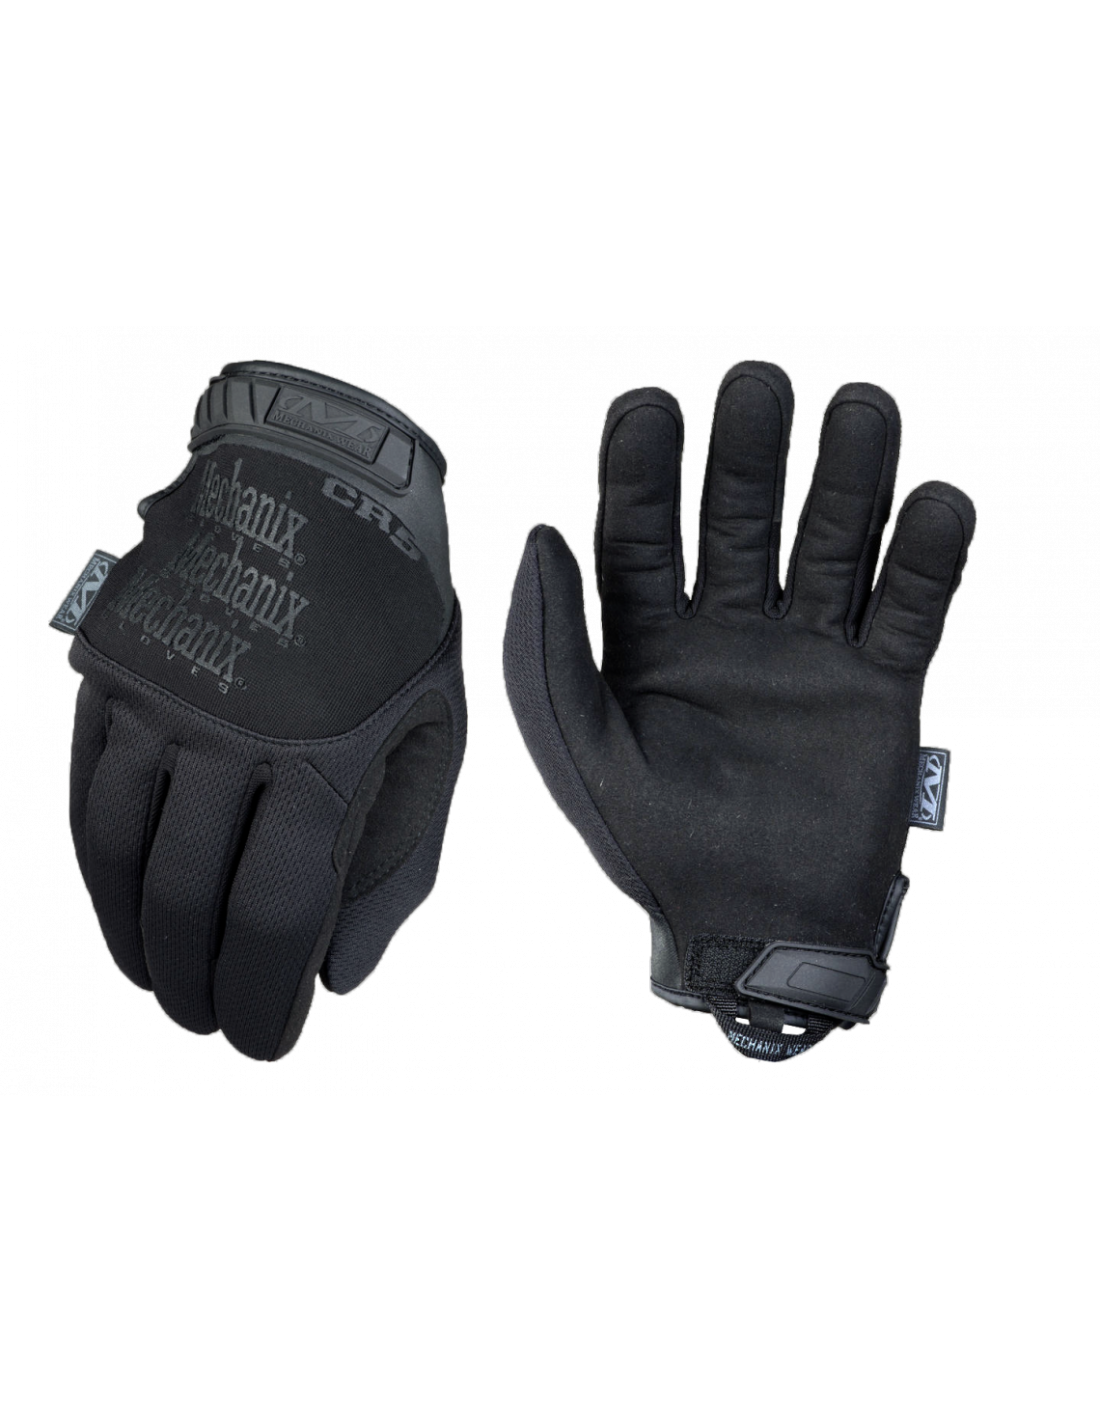 Fye Seguridad - GUANTES MECHANIX MPACT COVERT TACTICOS Los guantes Mechanix  Wear son los guantes mas elegidos por los profesionales alrededor del  mundo, su protección y precisión, junto con su agarre y